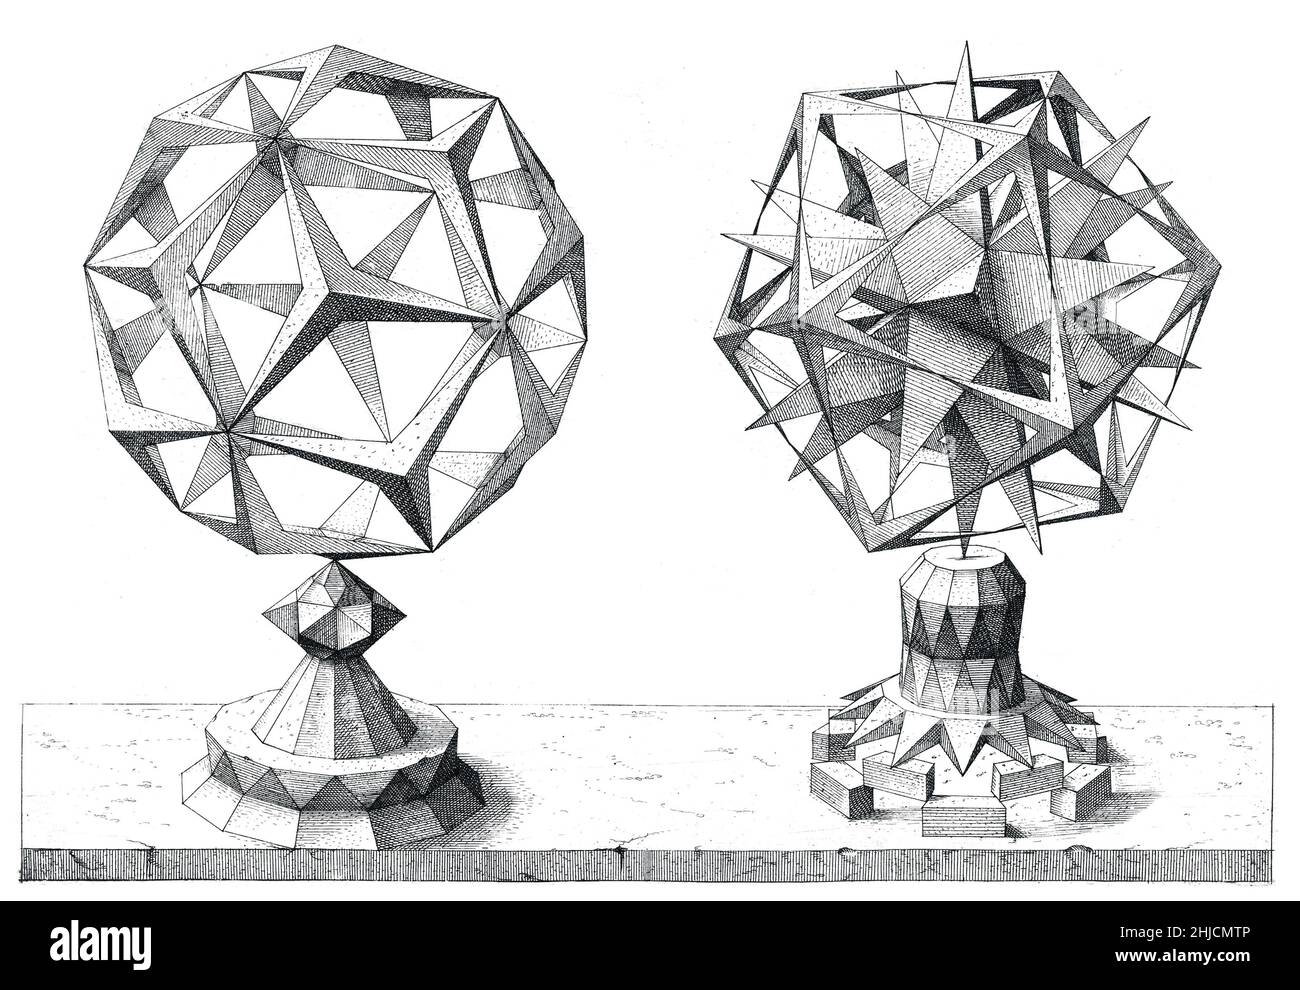 Variaciones poliédricas basadas en los cinco sólidos platónicos, o 'cuerpos regulares': El tetraedro, el cubo, el octaedro, el dodecaedro y el icosaedro. Desde Persptiva corporum Regularium (perspectiva de los cuerpos regulares), un compendio de geometría perspectival destinado a mostrar las habilidades gráficas de Wenzel Jamnitzer, un famoso orfebre alemán del siglo XVI. Grabado por Jost Amman (Suiza, 1539-1591) después de Jamnitzer. Foto de stock